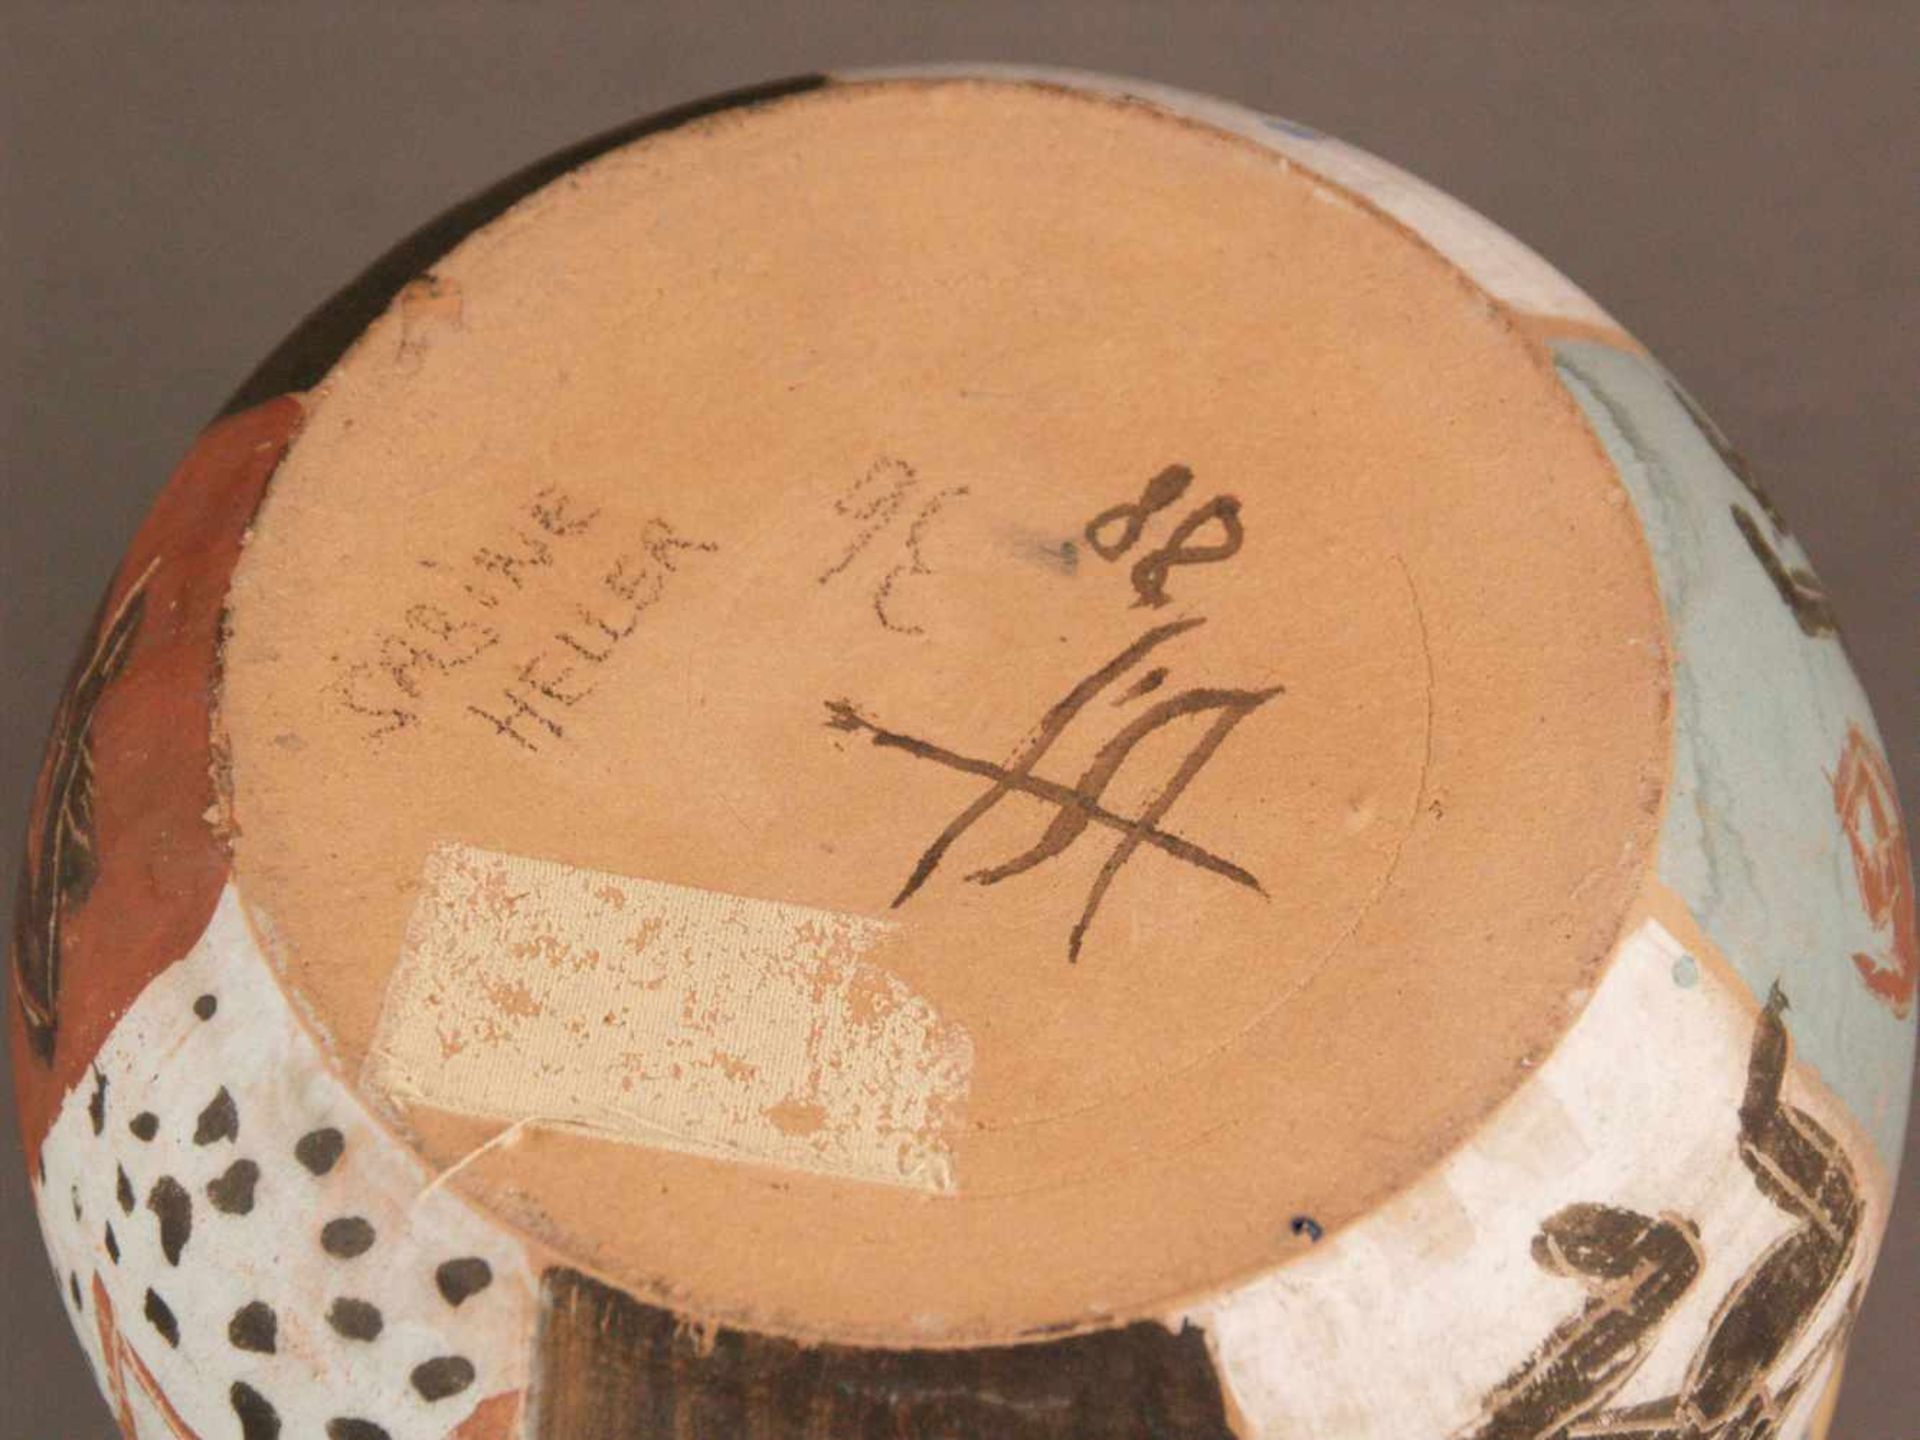 Künstlerkeramik - gebauchter Topf mit Deckel, Unterseite signiert "Sabine Heller", "88" datiert, - Bild 10 aus 10